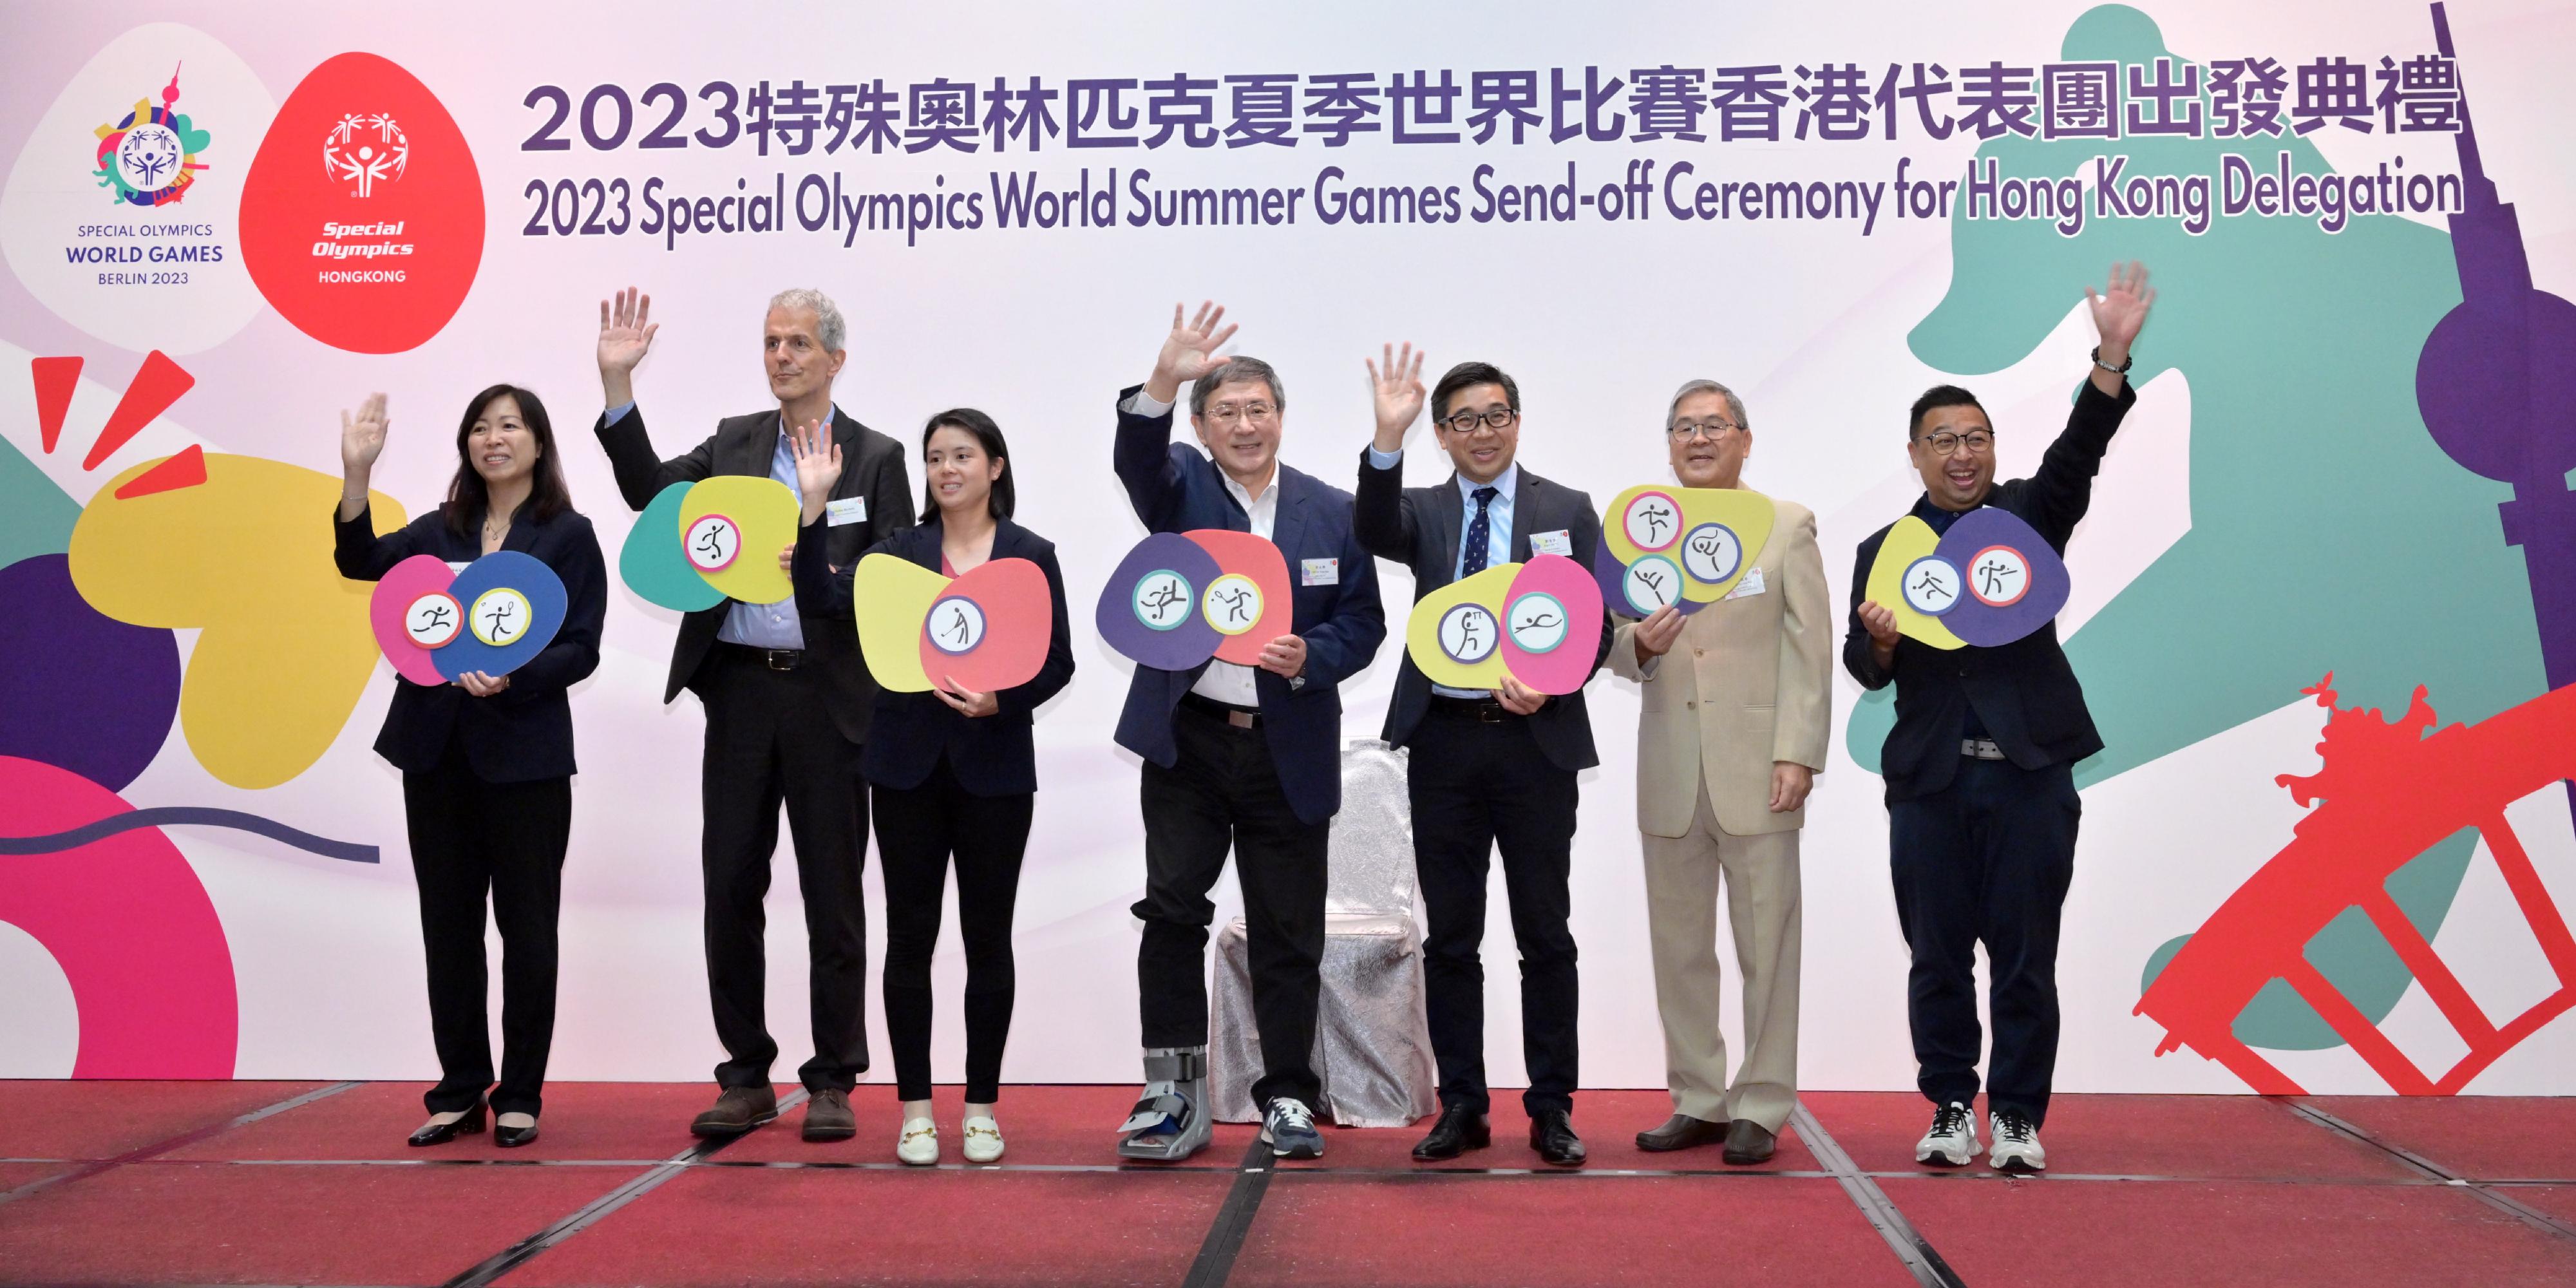 政務司副司長卓永興（中）今日（五月二十五日）與香港特殊奧運會主席林顥伊（左三）、德國駐香港副總領事張德林（左二）、署理體育專員鄭青雲（右三）和其他嘉賓一同主持2023特殊奧林匹克夏季世界比賽香港代表團出發典禮。